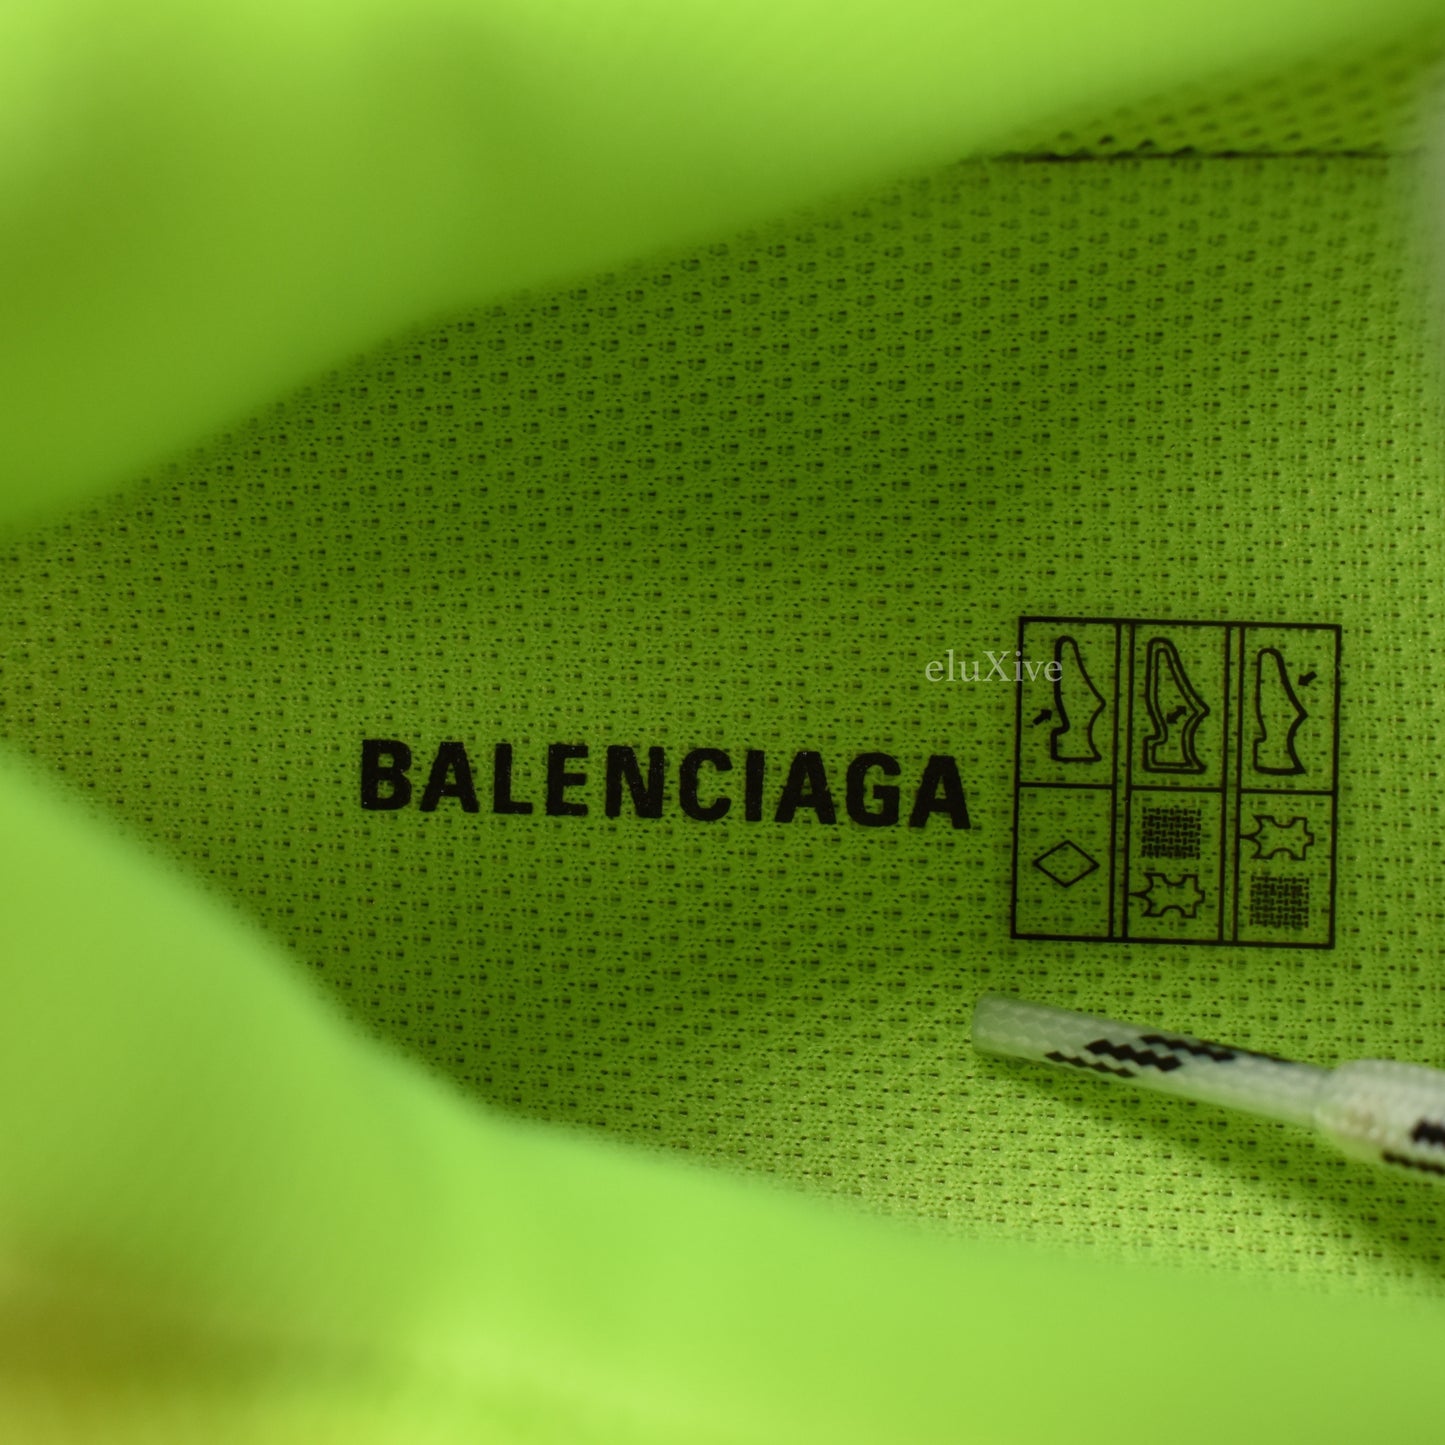 Balenciaga - Triple S Trainer (Neon)